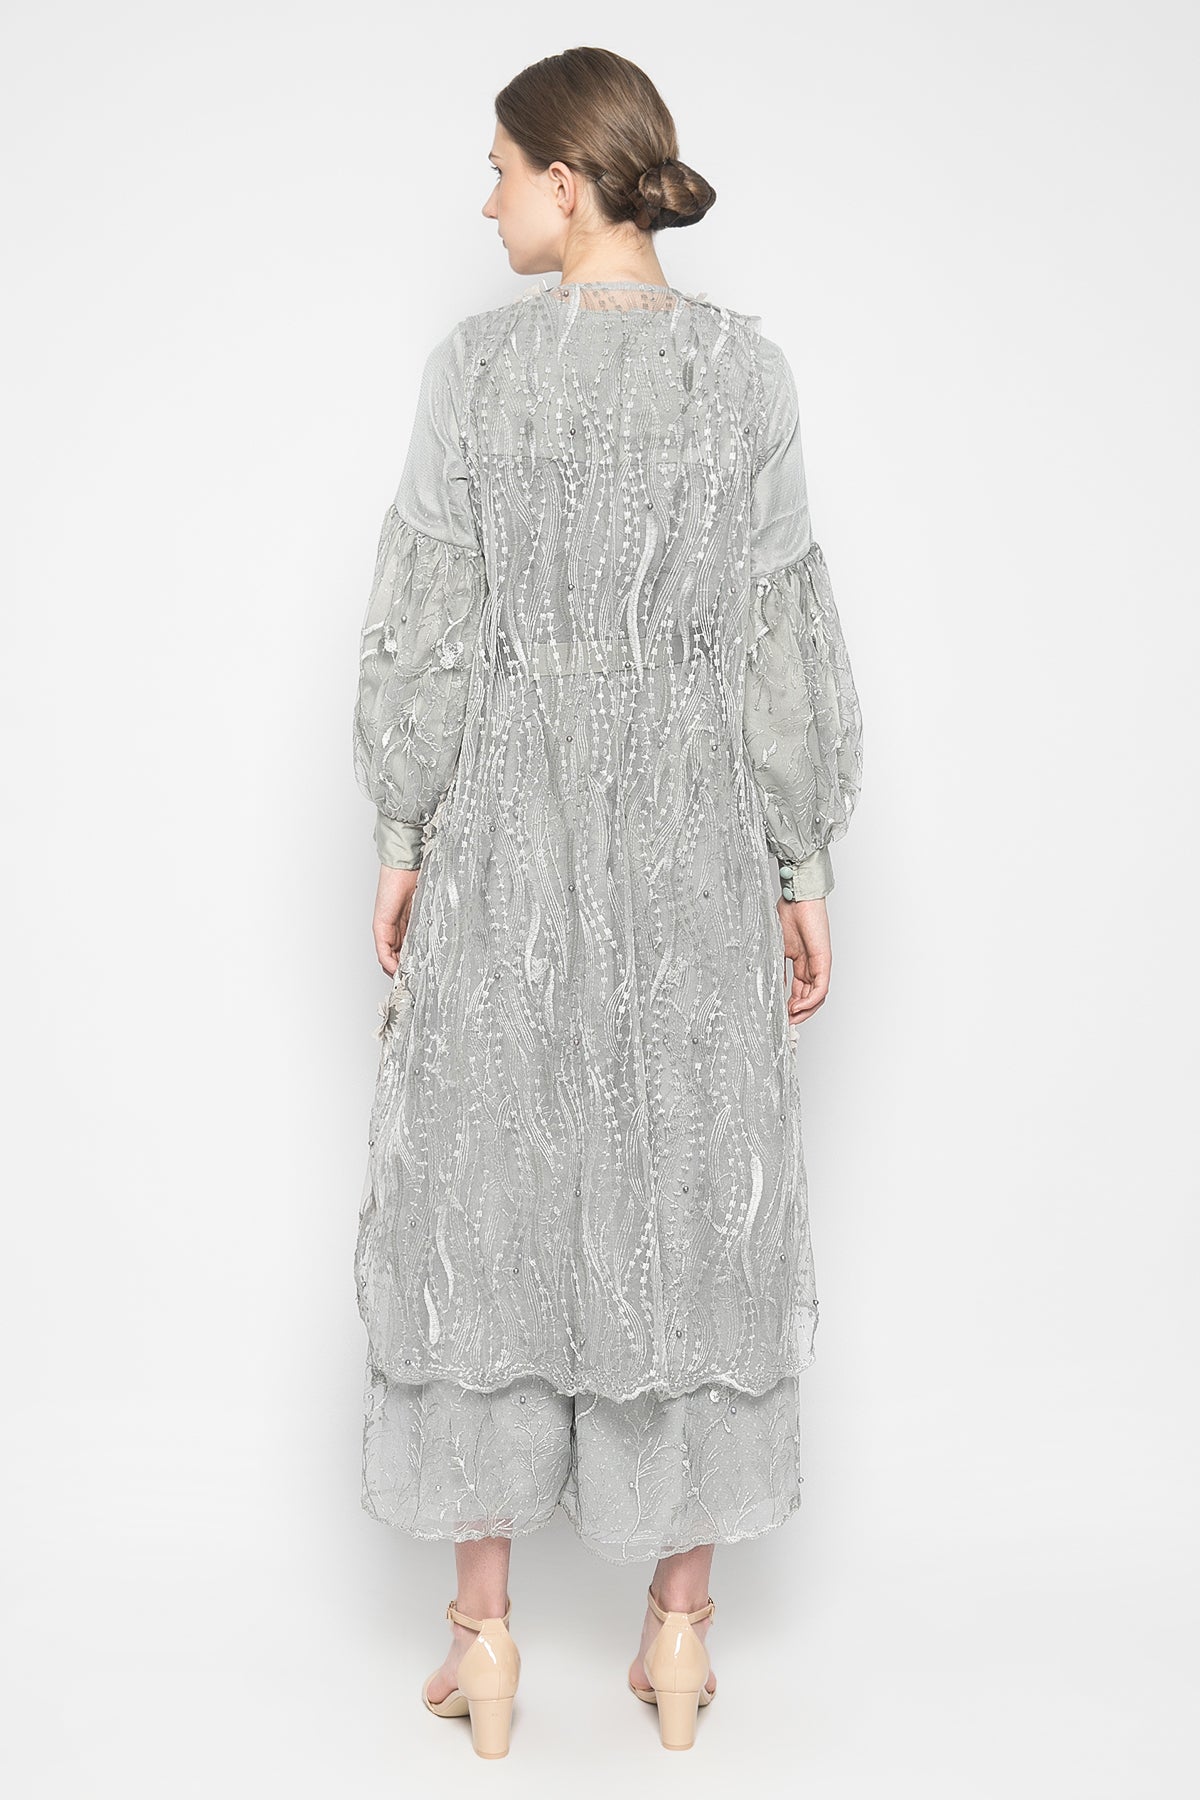 Nazira Dress in Grey